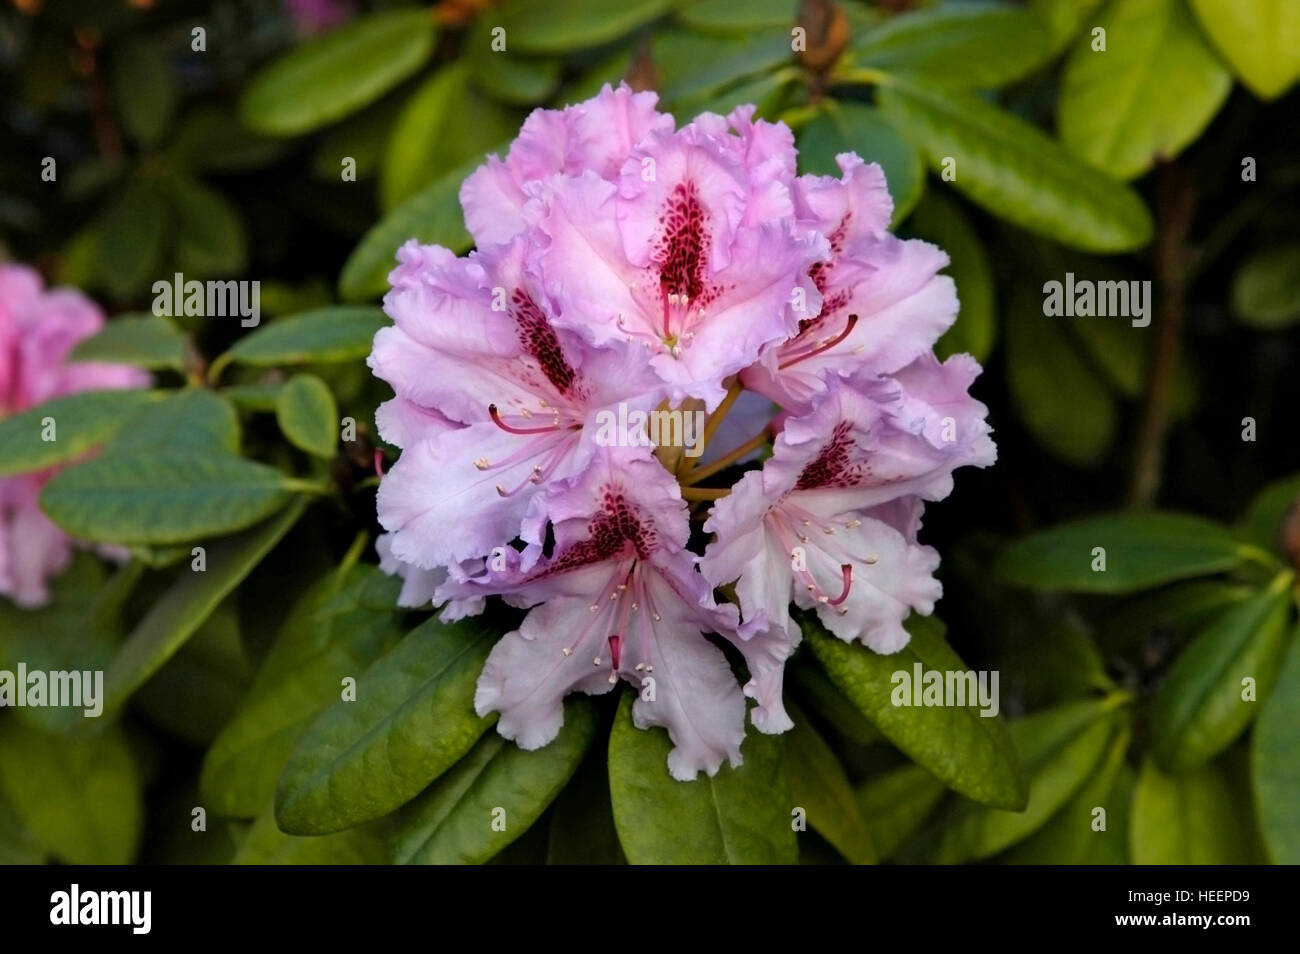 Rhododeudvou fiore viola e rosa ombreggiato. Foto Stock